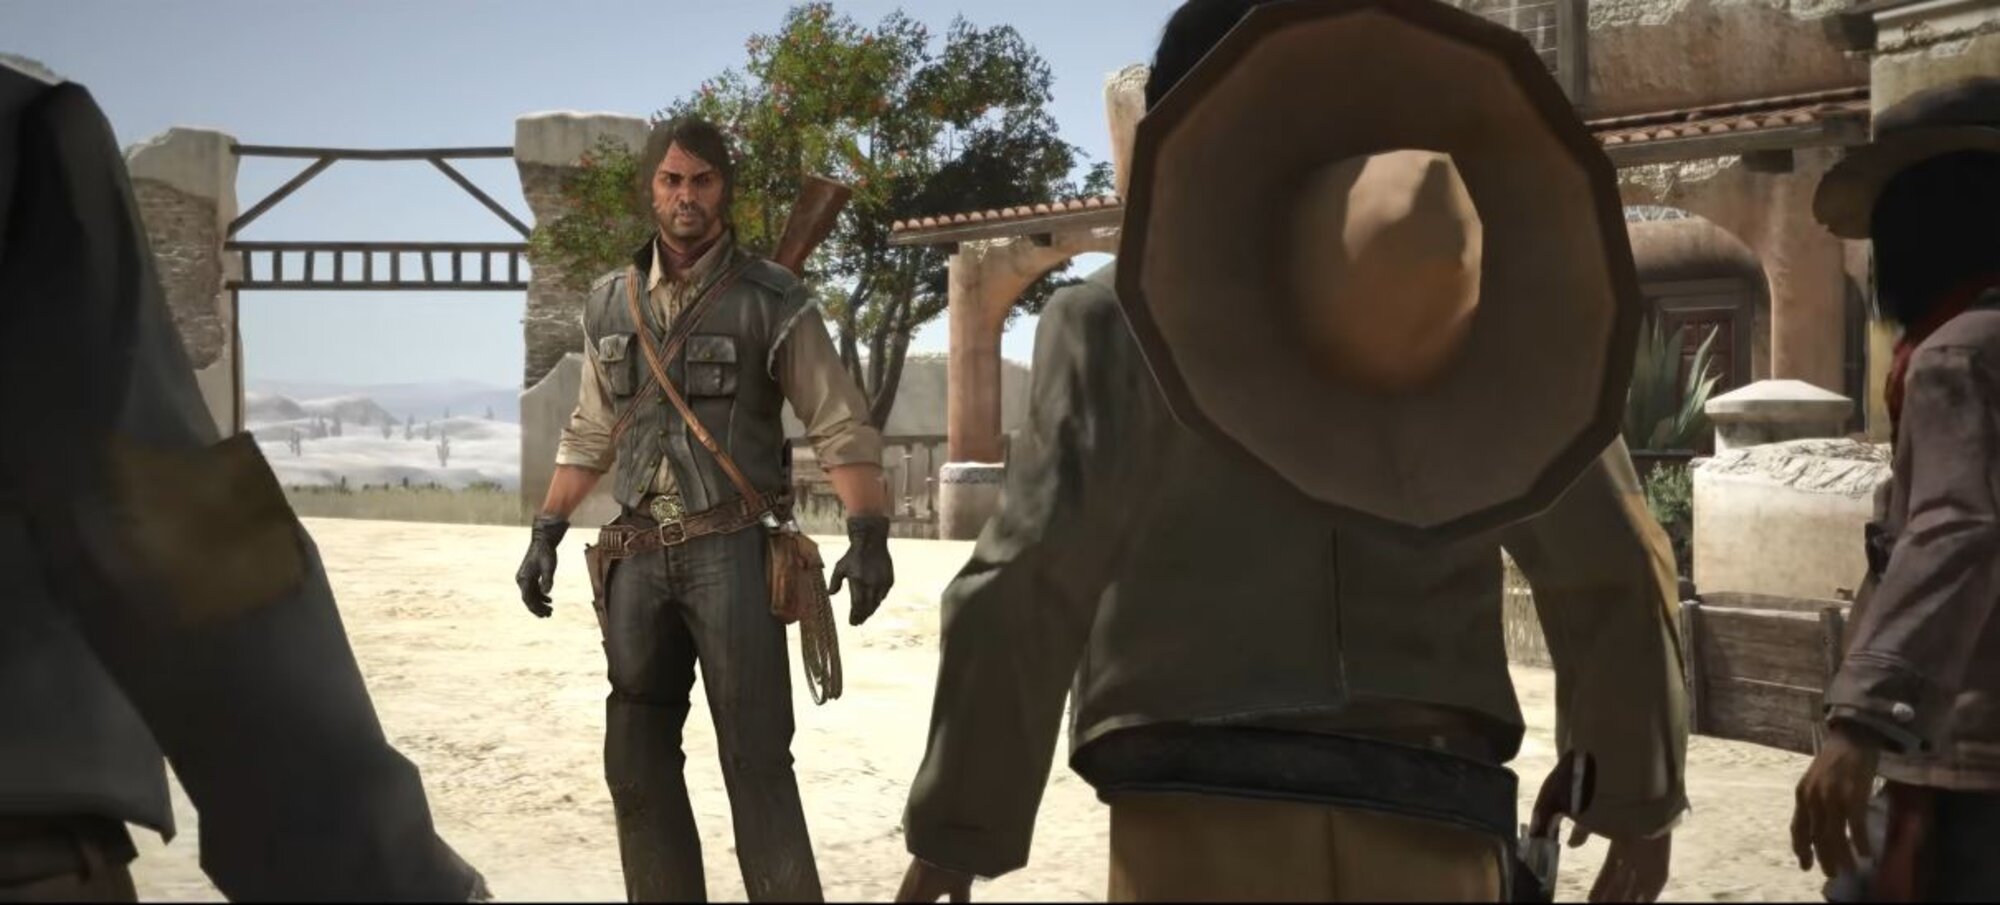 C'est confirmé : Read Dead Redemption arrive sur Switch et les consoles PlayStation dans quelques jours